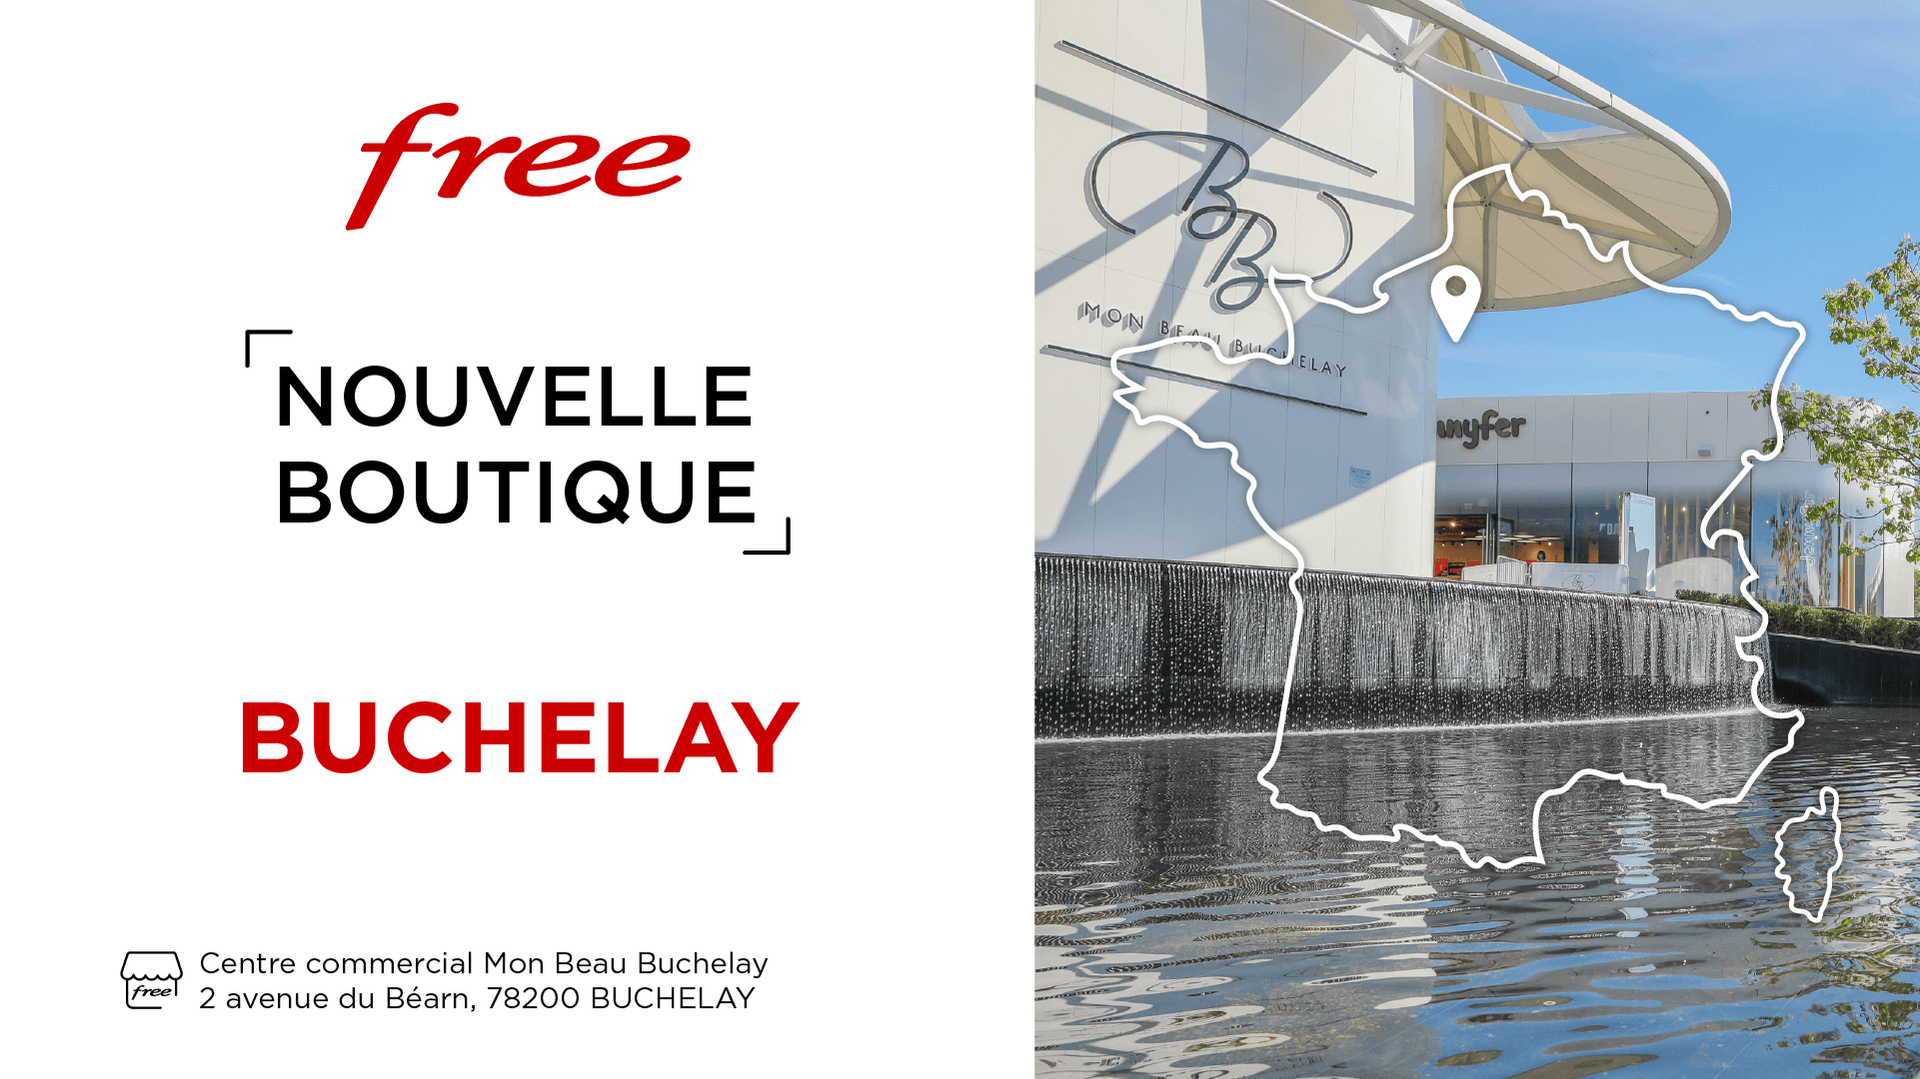 Boutique Free : découvrez la nouvelle boutique de Buchelay